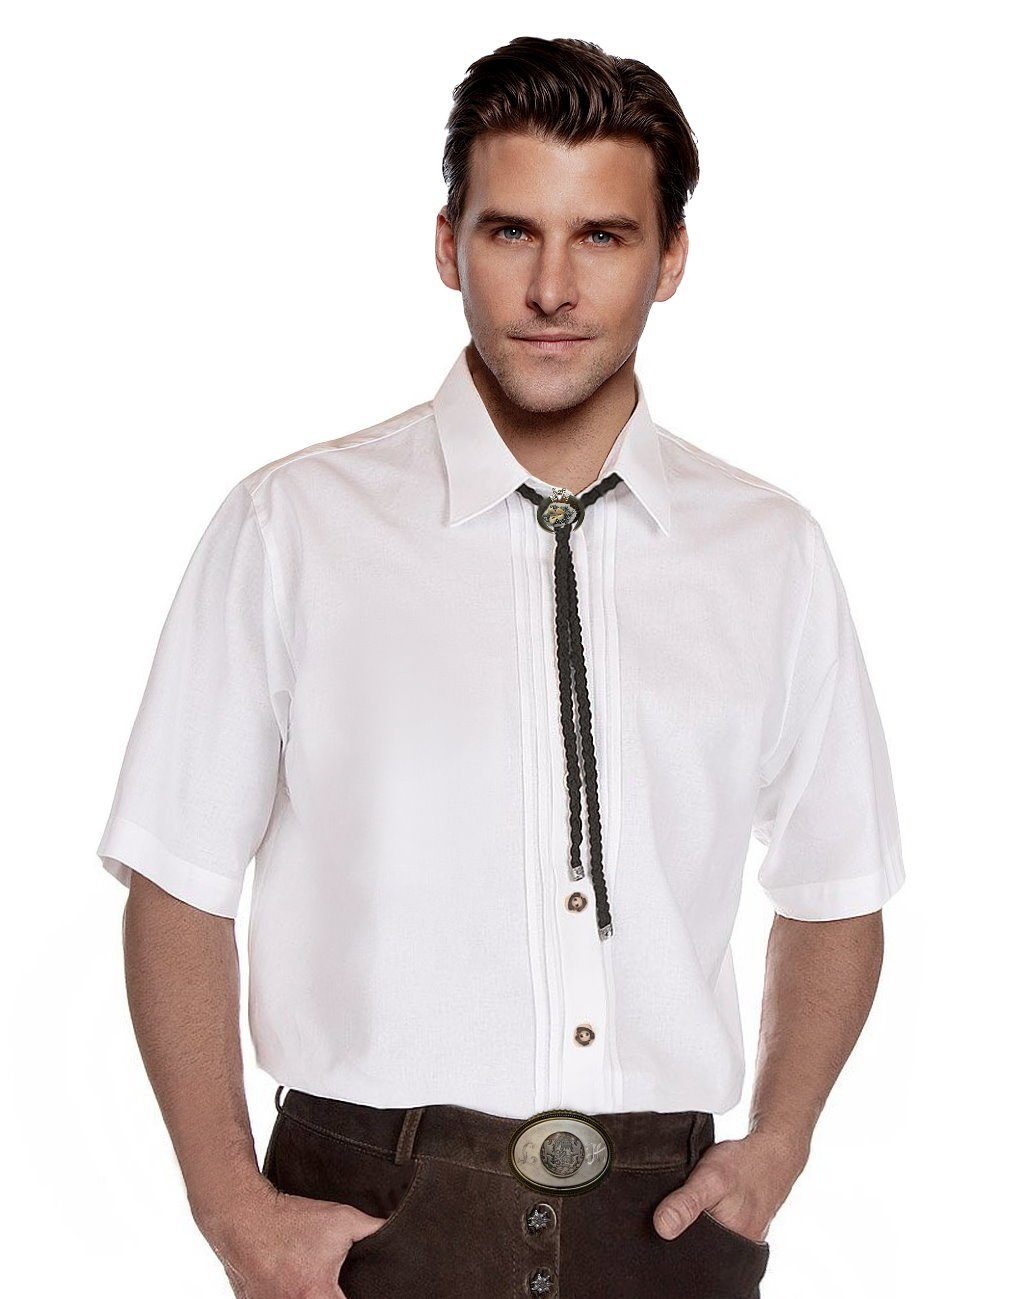 Herren Wiesn-Hemd Weiß Moschen-Bayern mit Kurzarm Trachtenhemd Biesen klassischen Herrenhemd Trachtenhemd